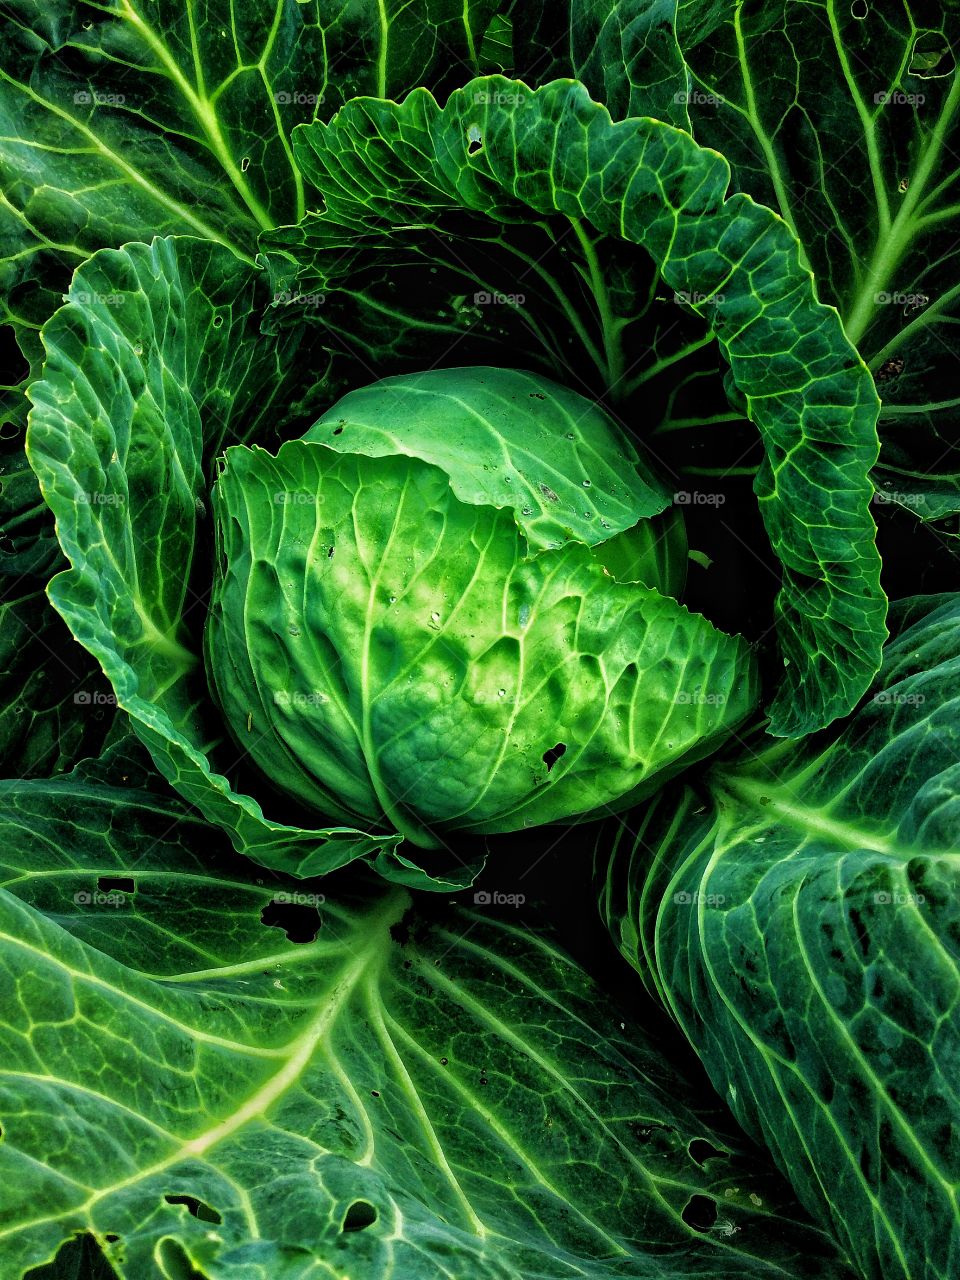 Garden cabbage 